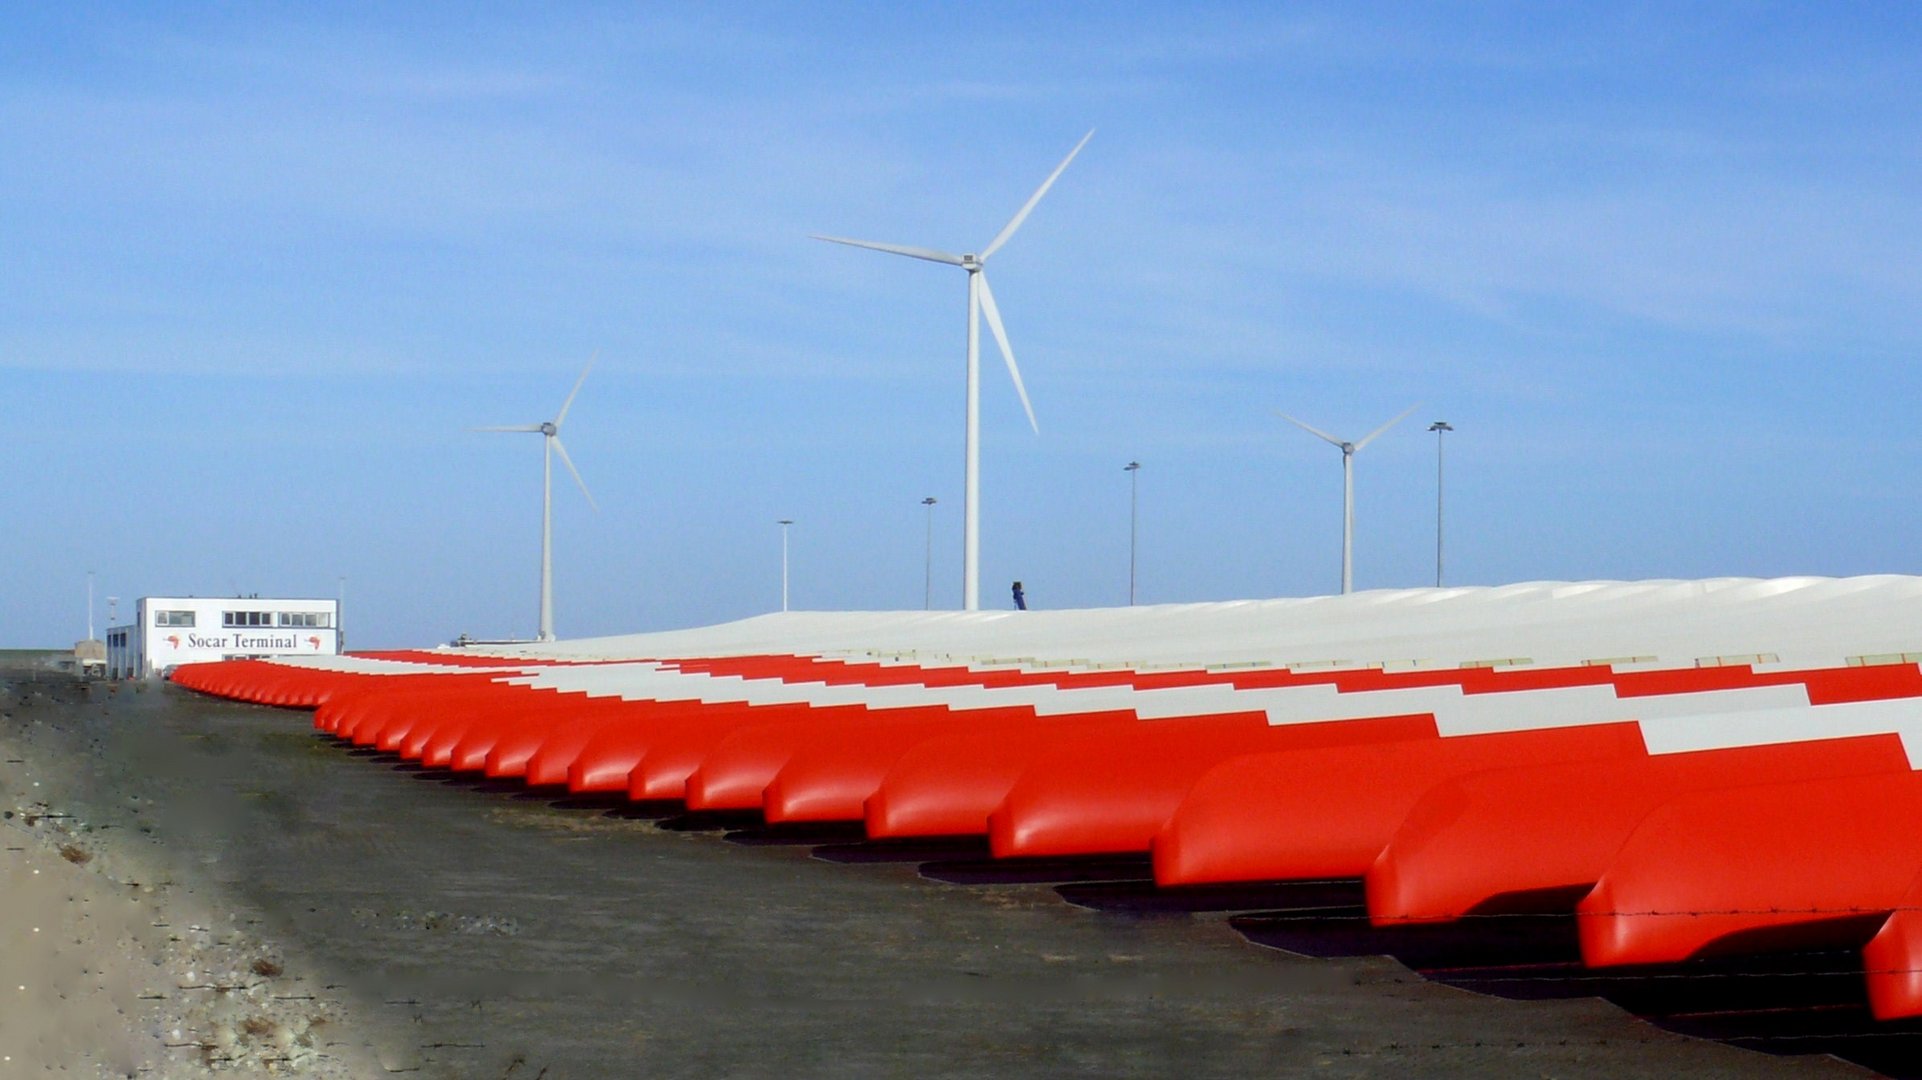 Windkraft - Eine der alternativen Energiequellen